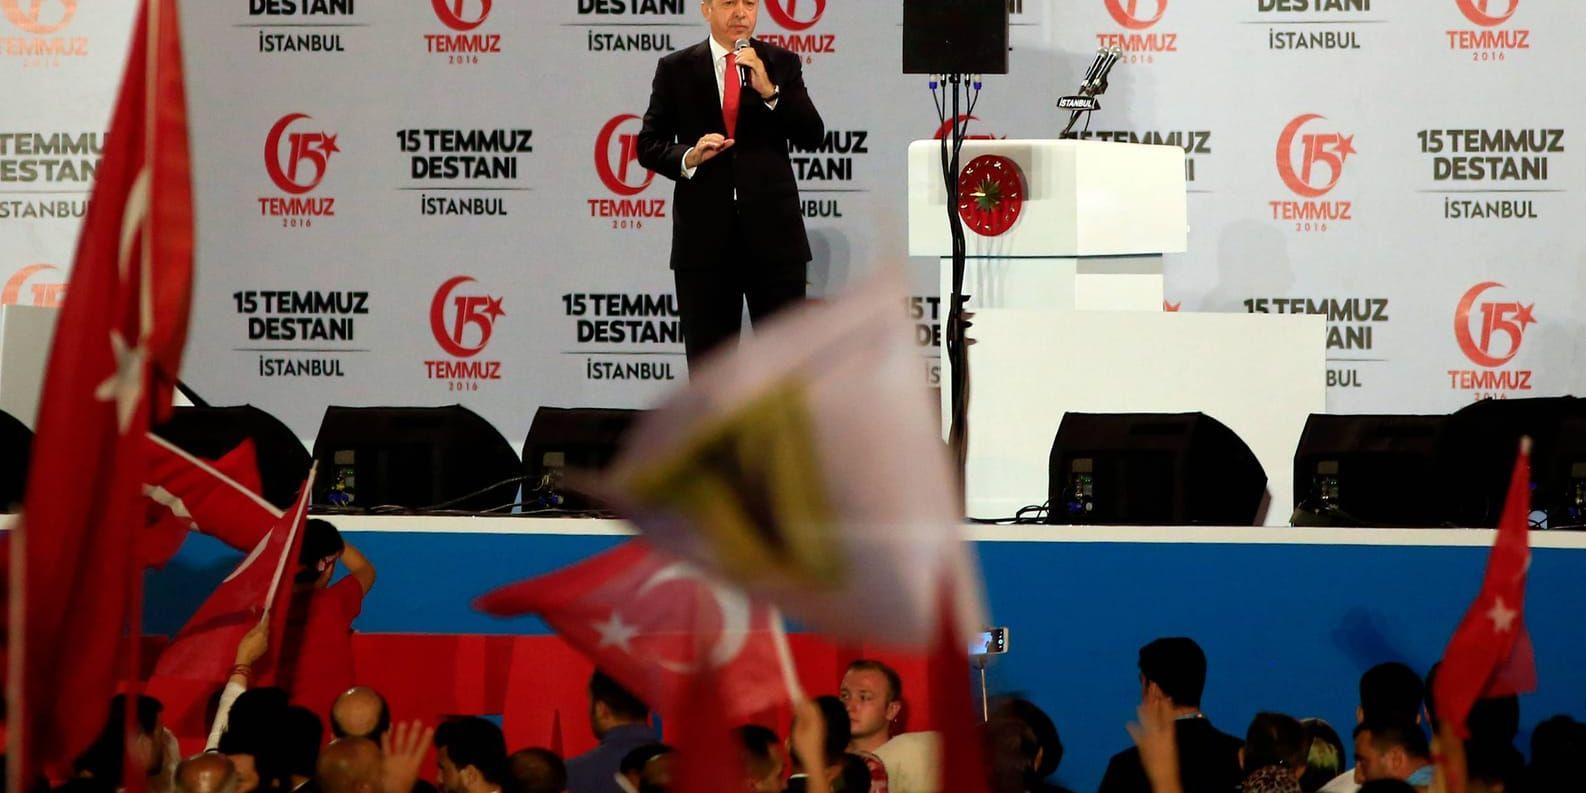 Turkiets president Recep Tayyip Erdogan uppvisade en oförsonlig linje när han talade i Istanbul.